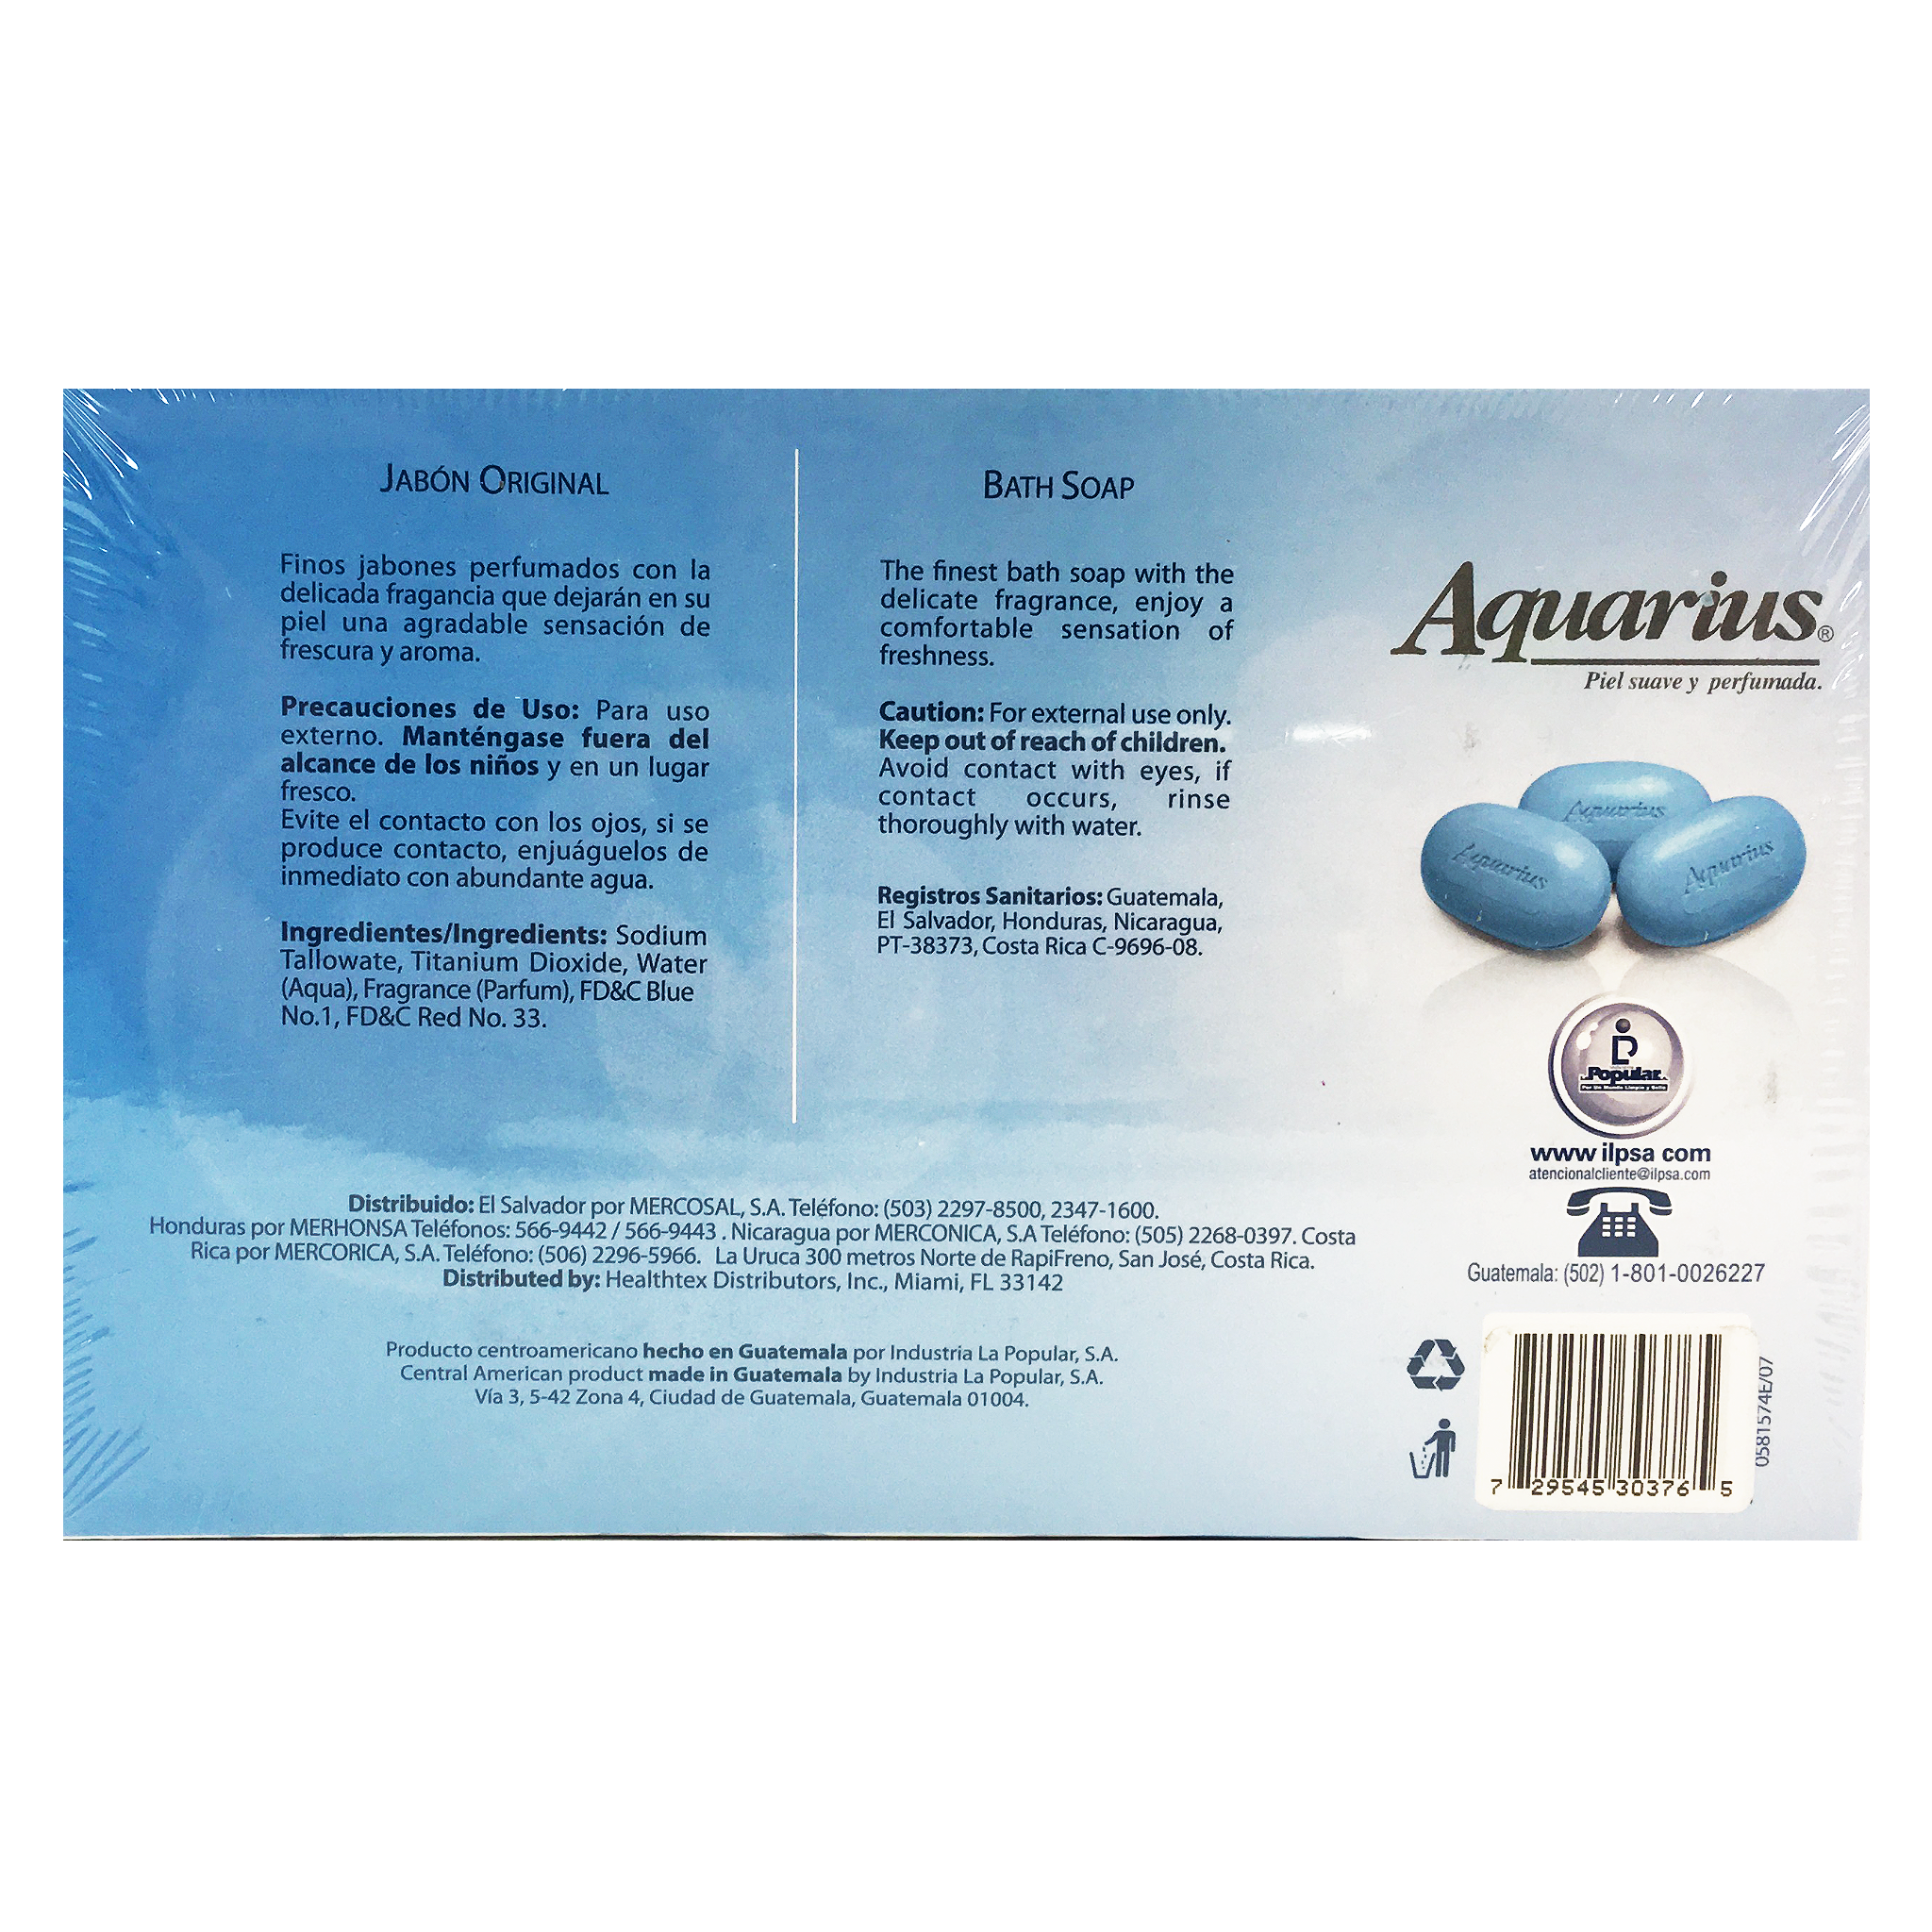 Aquarius Soap Set